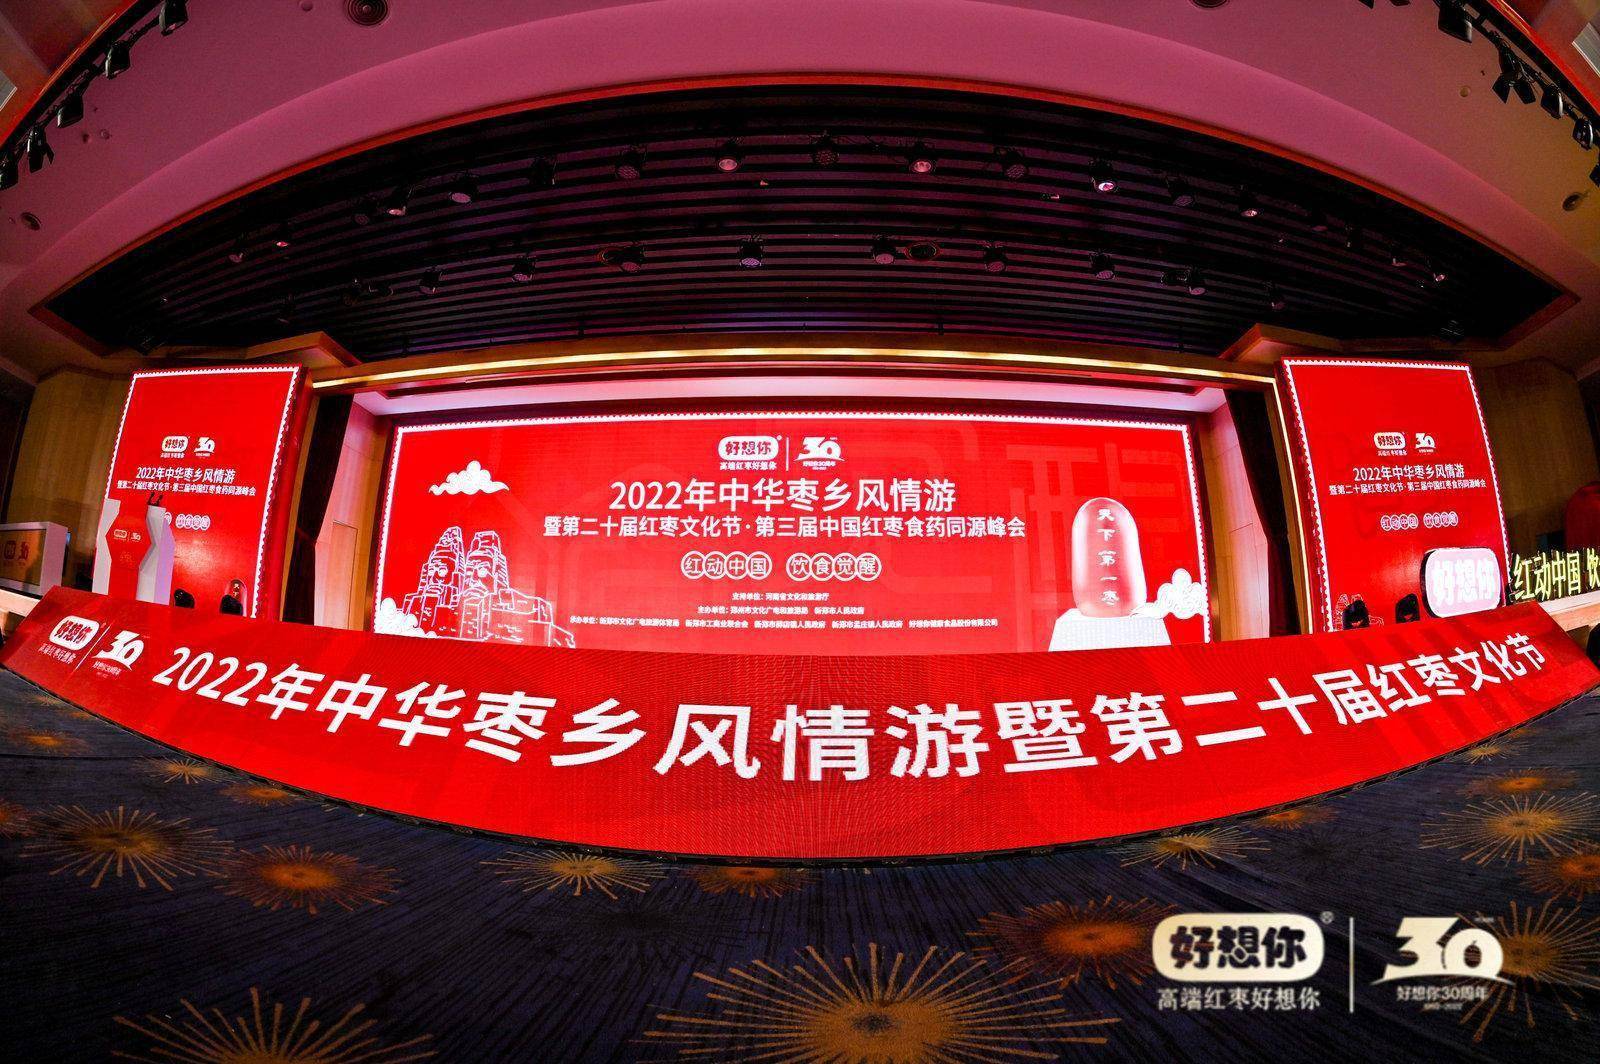 2022年中华枣乡风情游在新郑启幕